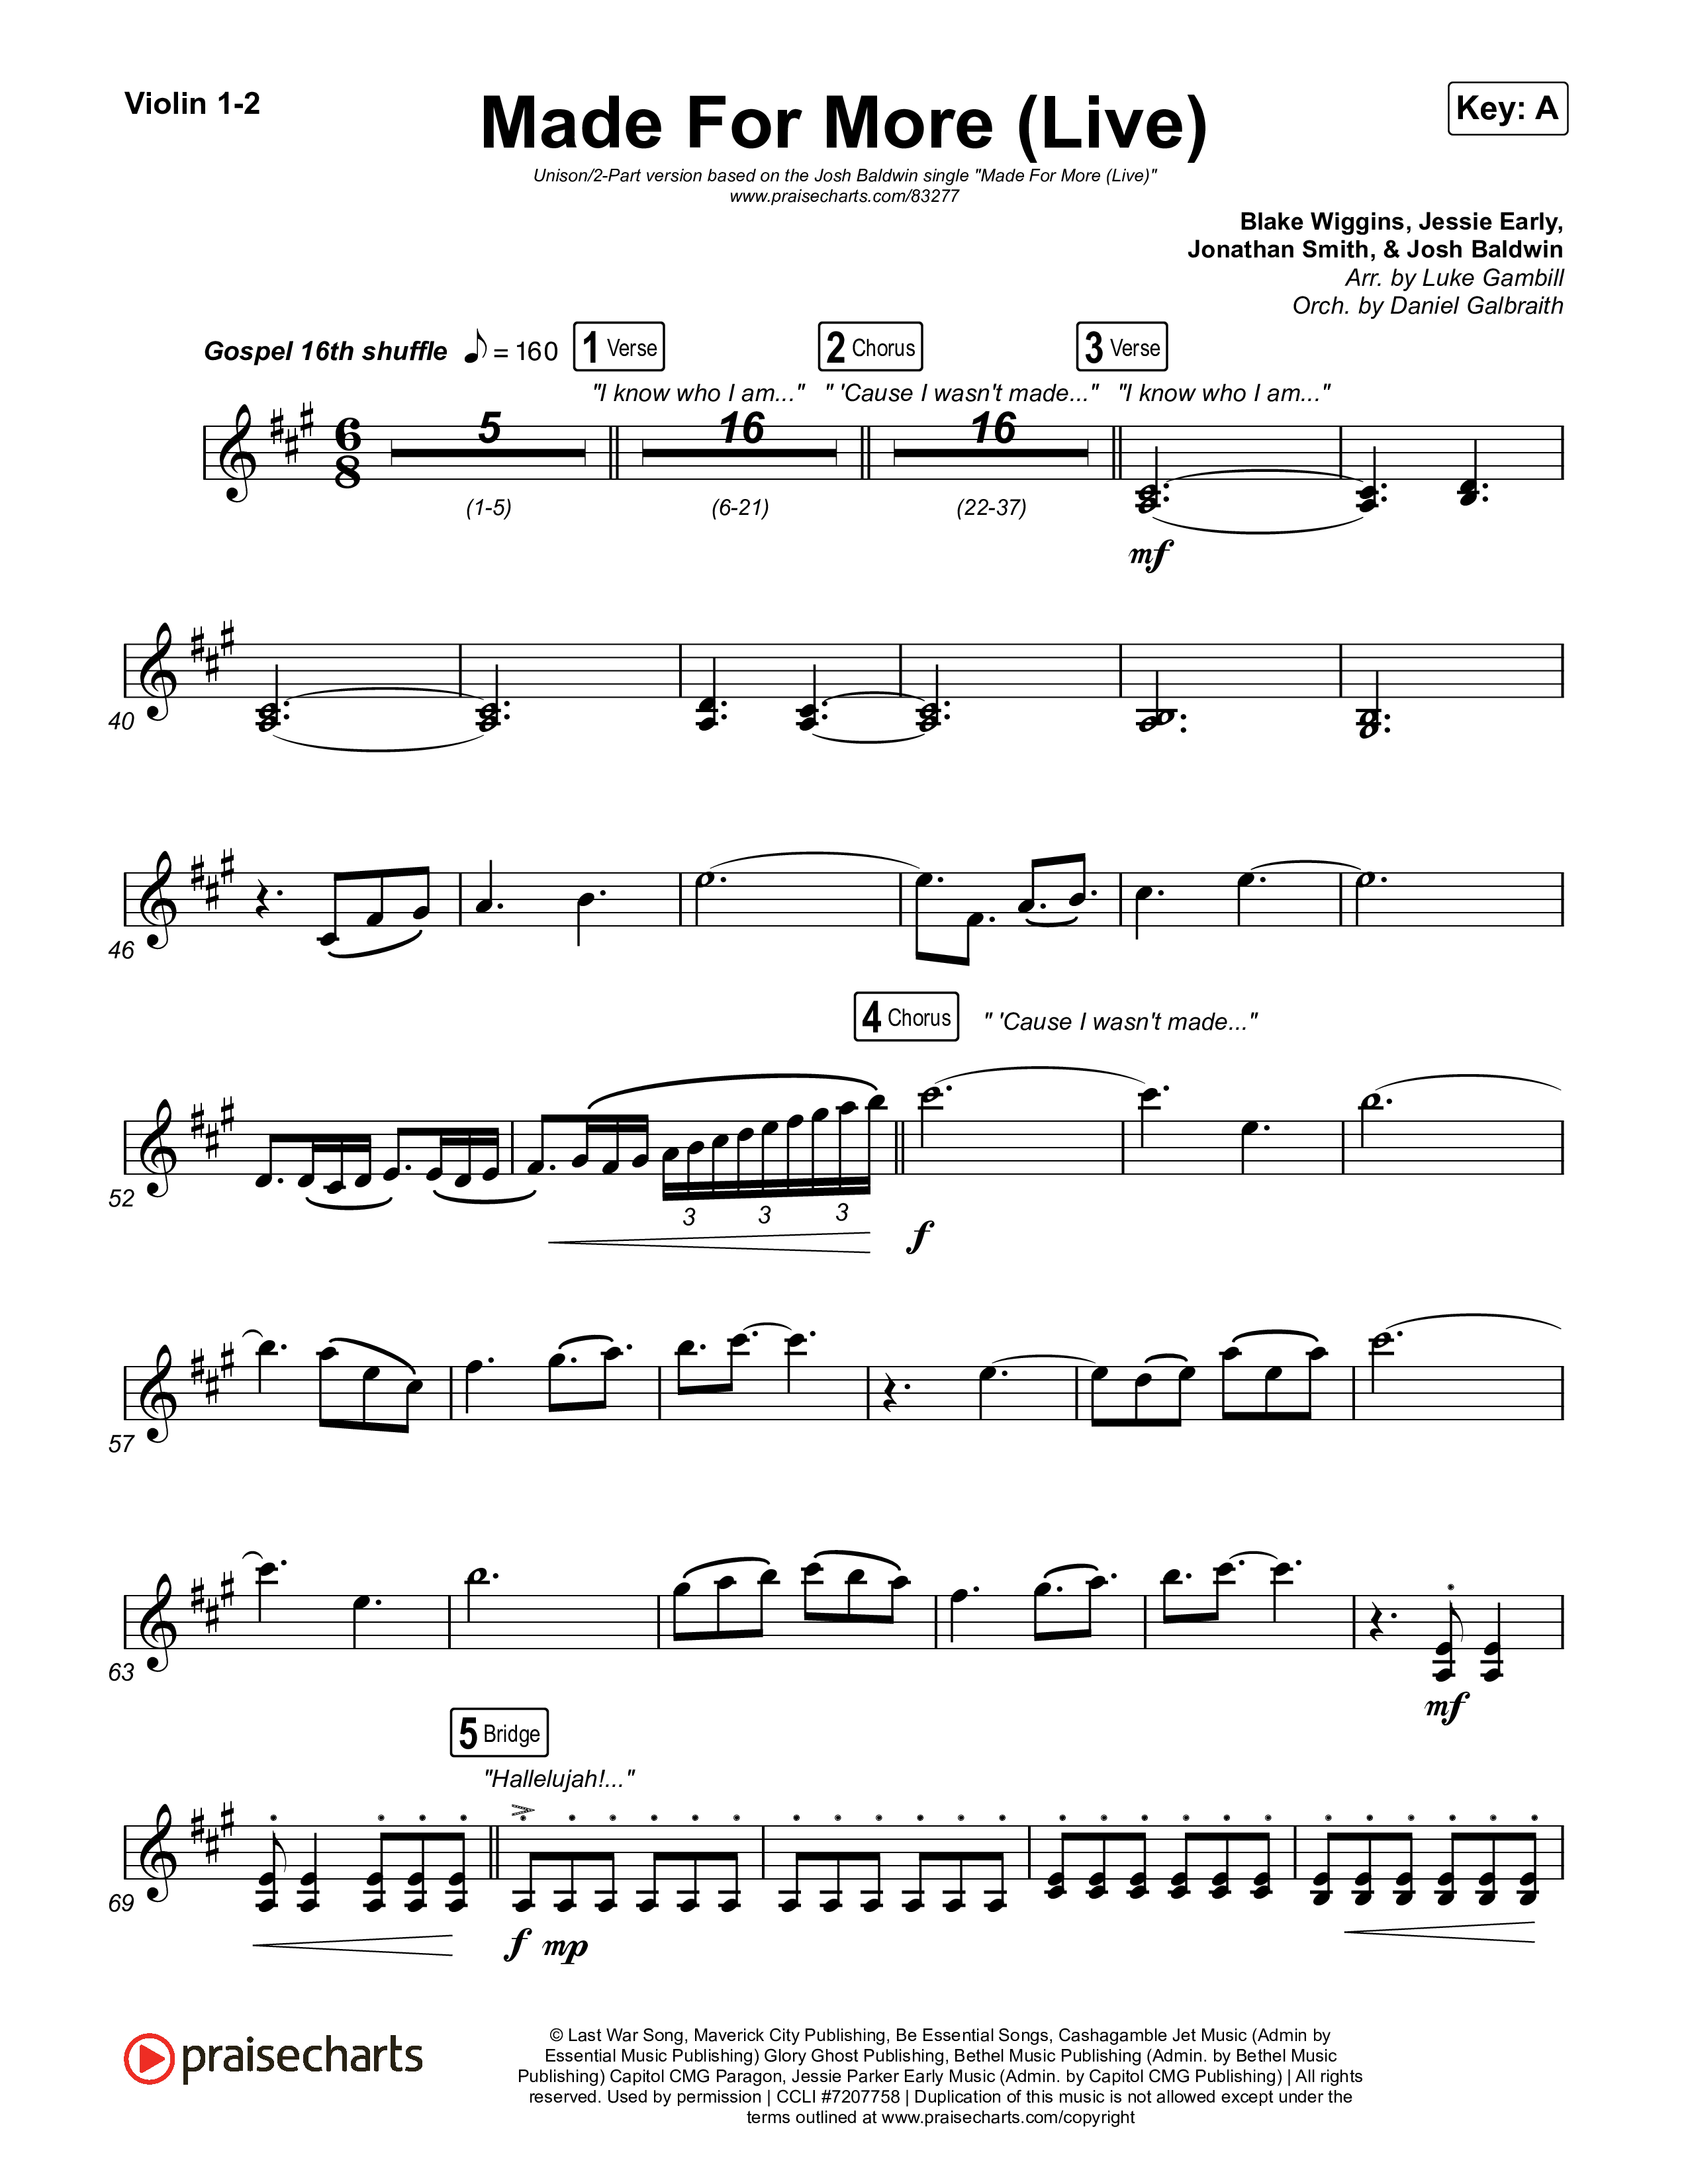 Made For More (Unison/2-Part) Violin 1/2 (Josh Baldwin / Jenn Johnson / Arr. Luke Gambill)